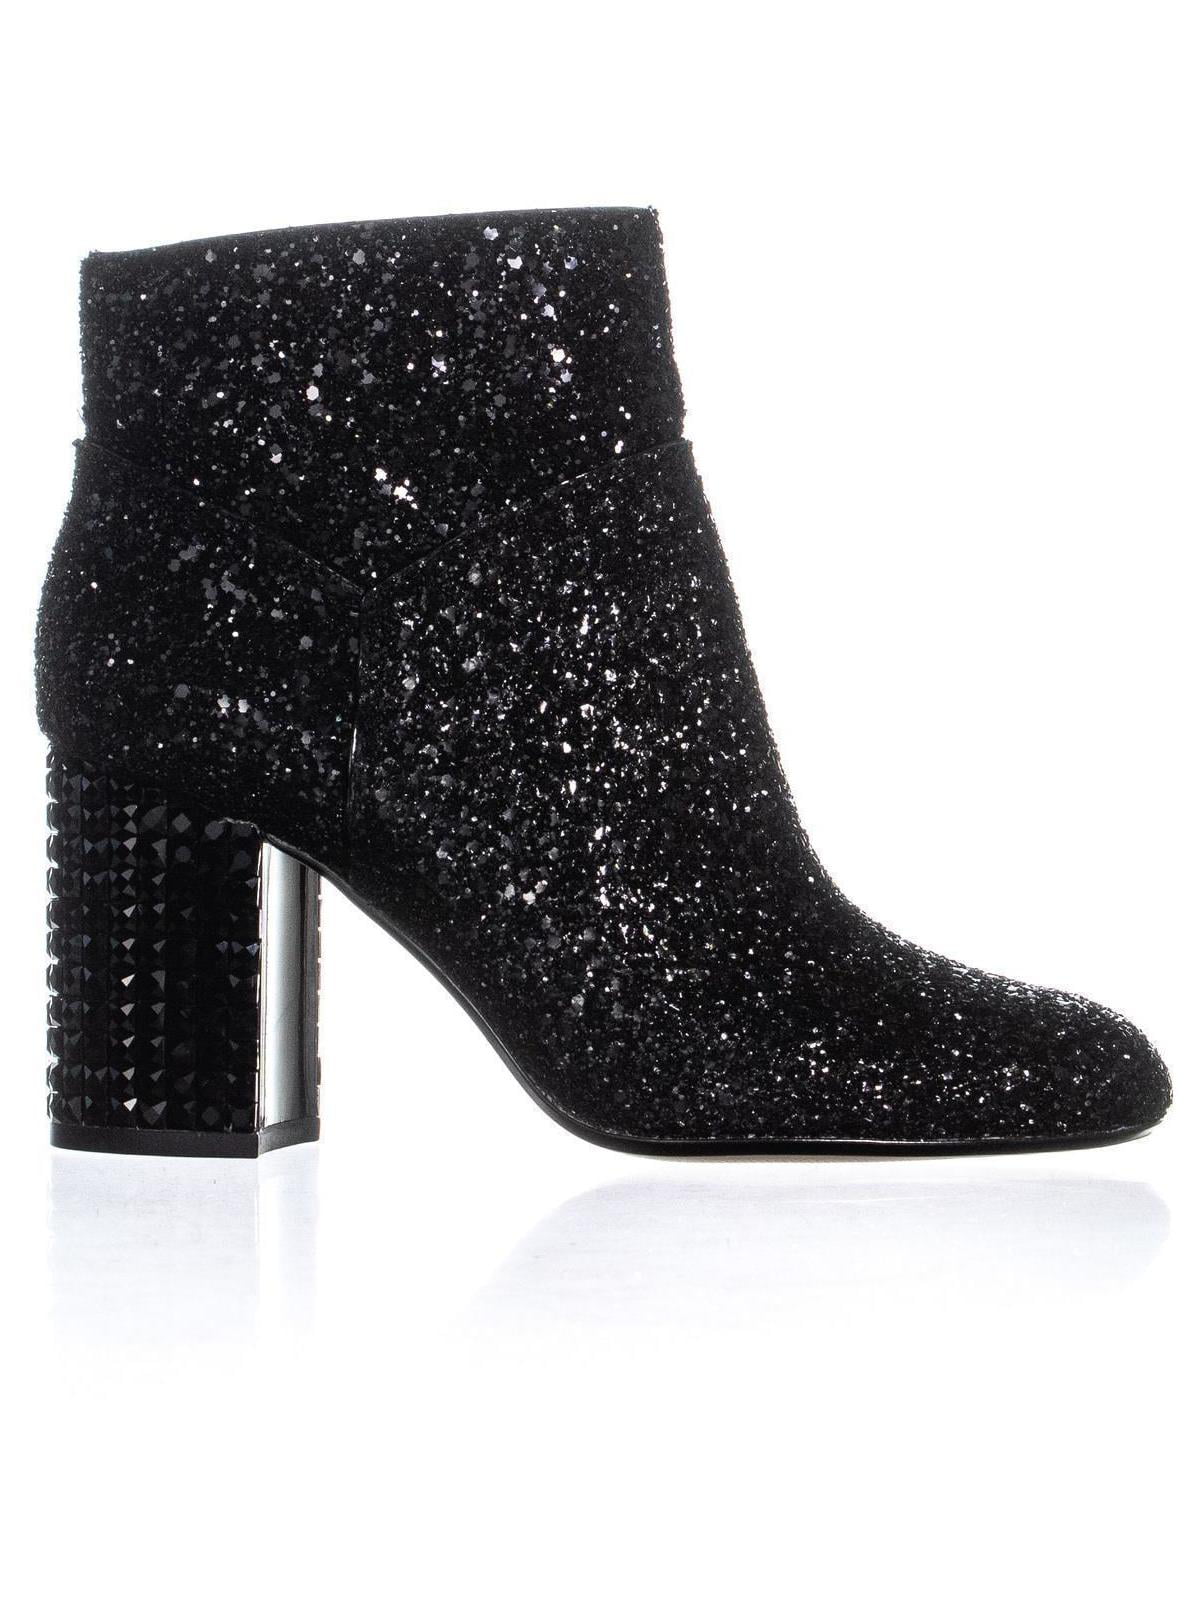 smugling veteran Busk Womens MICHAEL Michael Kors Arabella Studded Heel Ankle Boots, Black  Glitter, 7 US / 37 EU - Walmart.com